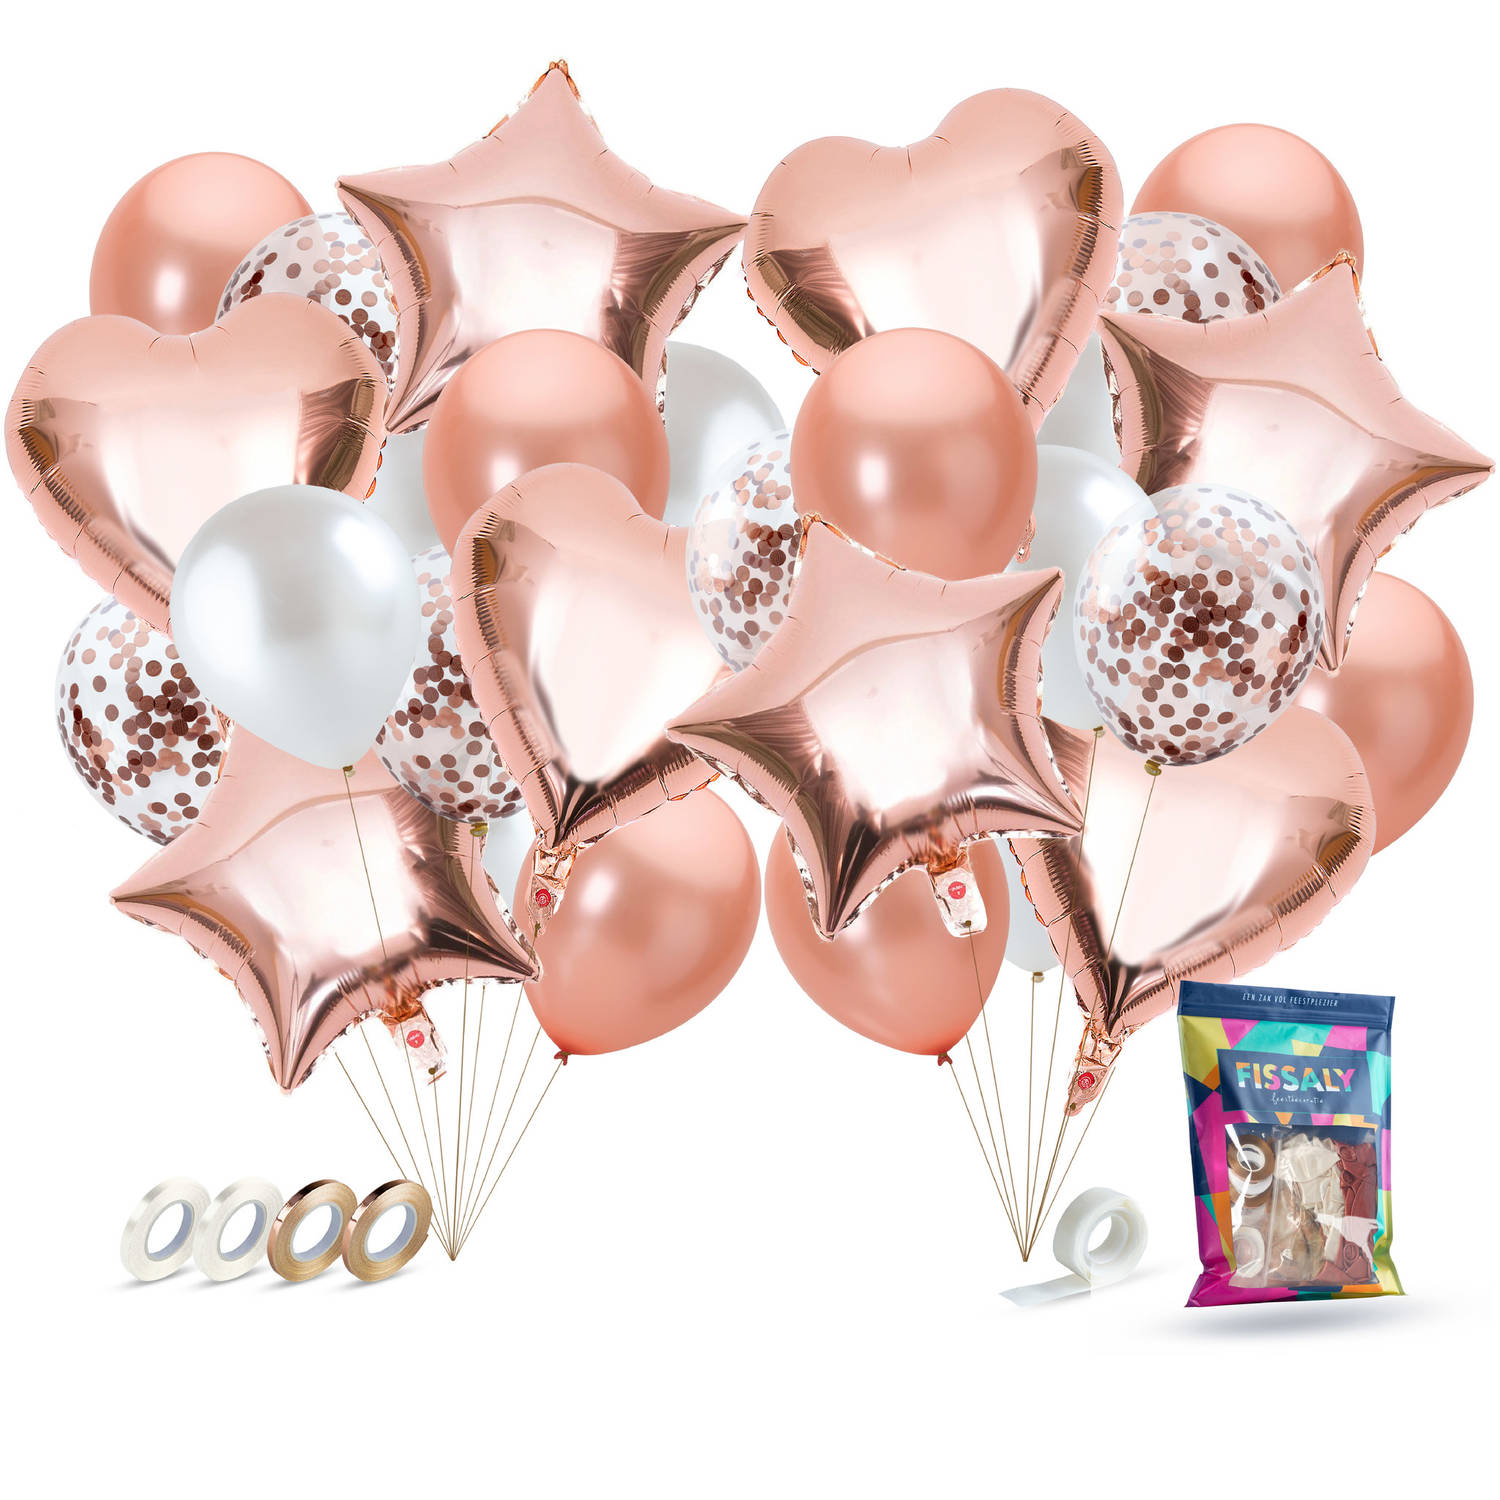 Fissaly® 40 Stuks Rose Goud Helium Ballonnen Met Lint Verjaardag Feest Decoratie Papieren Confetti R